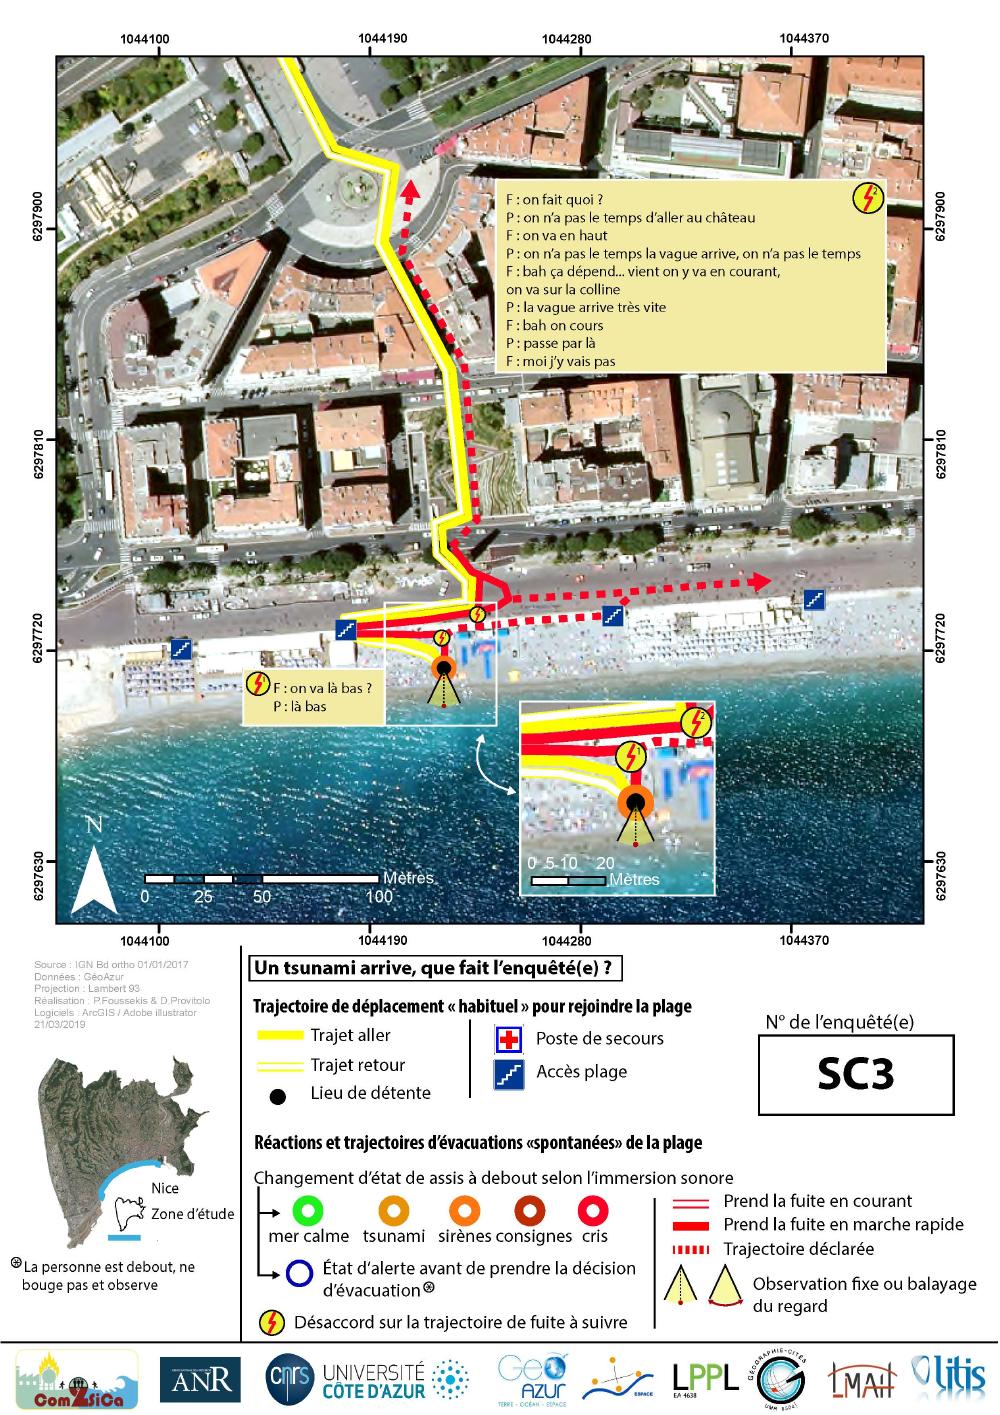 Carte de trajet de fuite des enquétés suite à l'arrivée virtuelle d'un tsunami